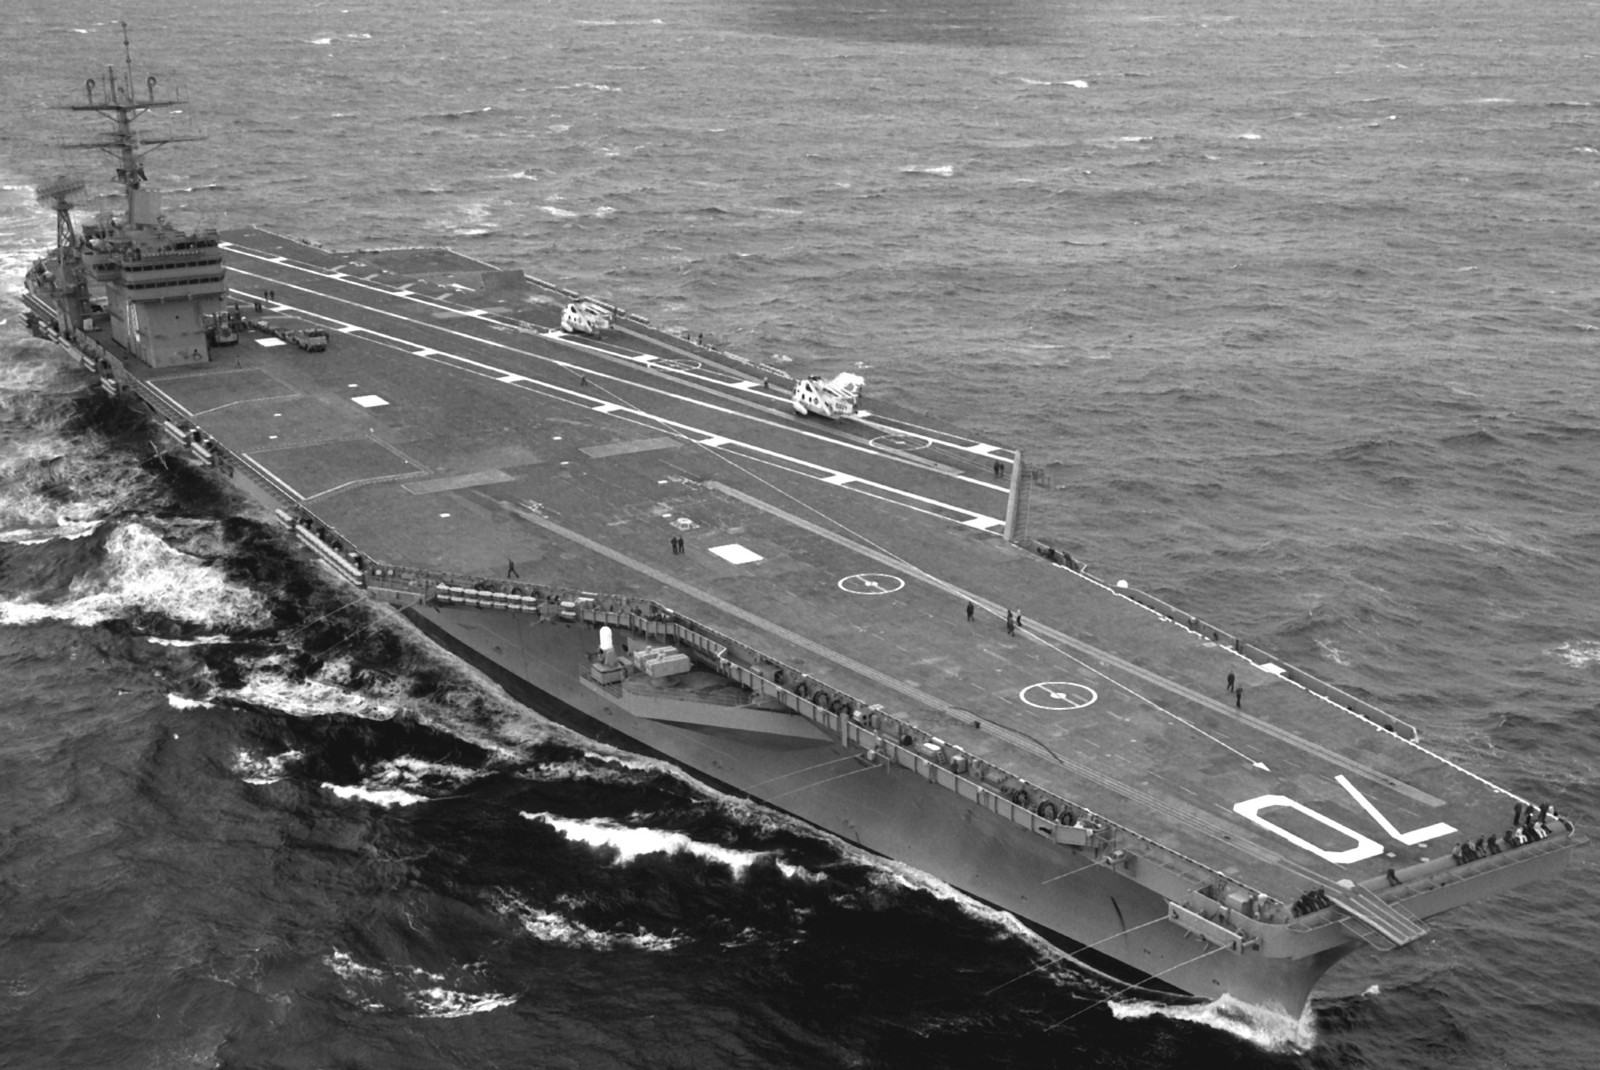 cvn-70 uss carl vinson nimitz class aircraft carrier us navy 07